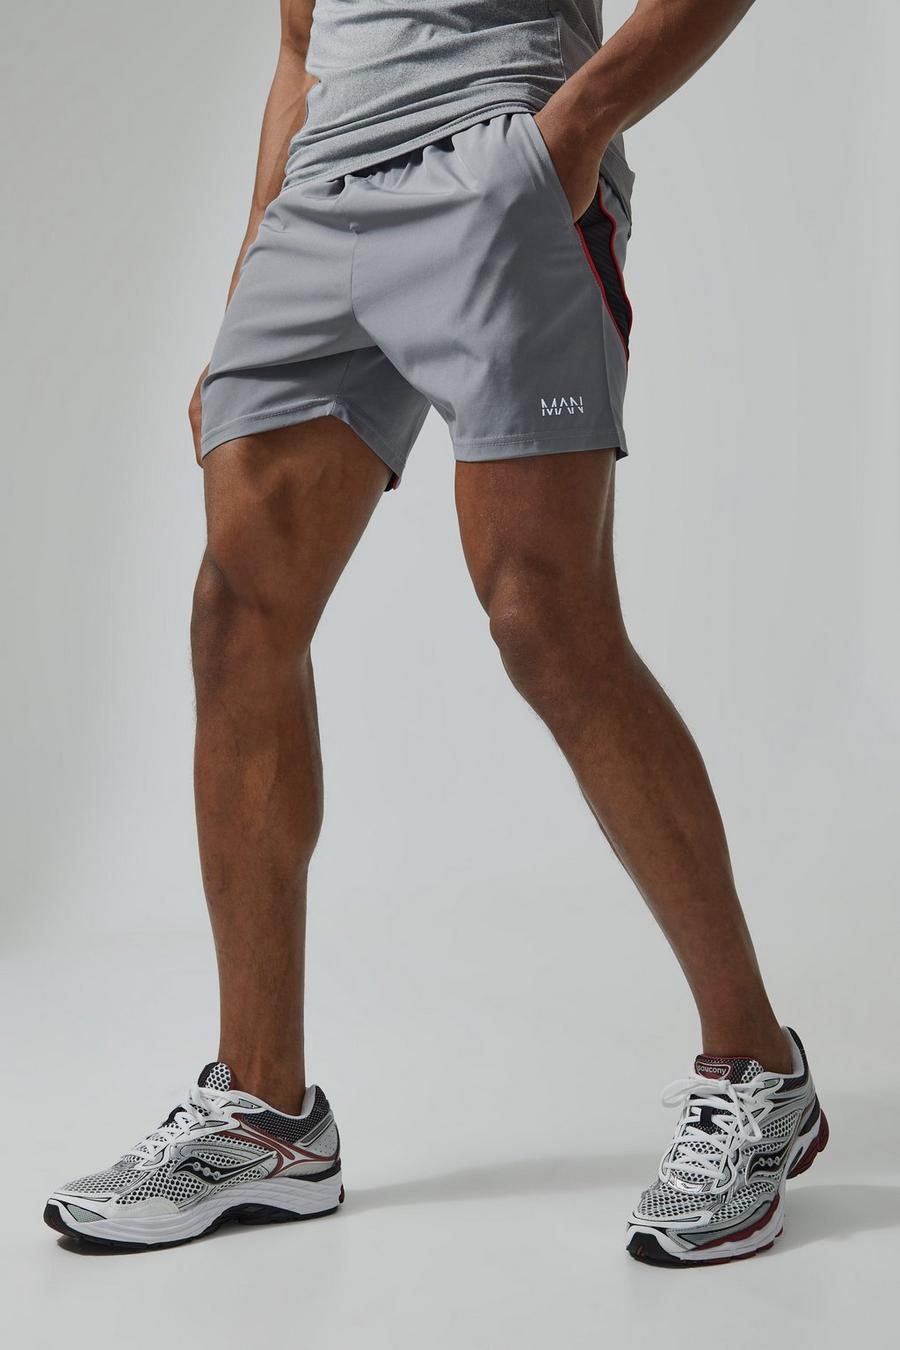 Man Active strukturierte Colorblock Mesh-Shorts, Light grey image number 1